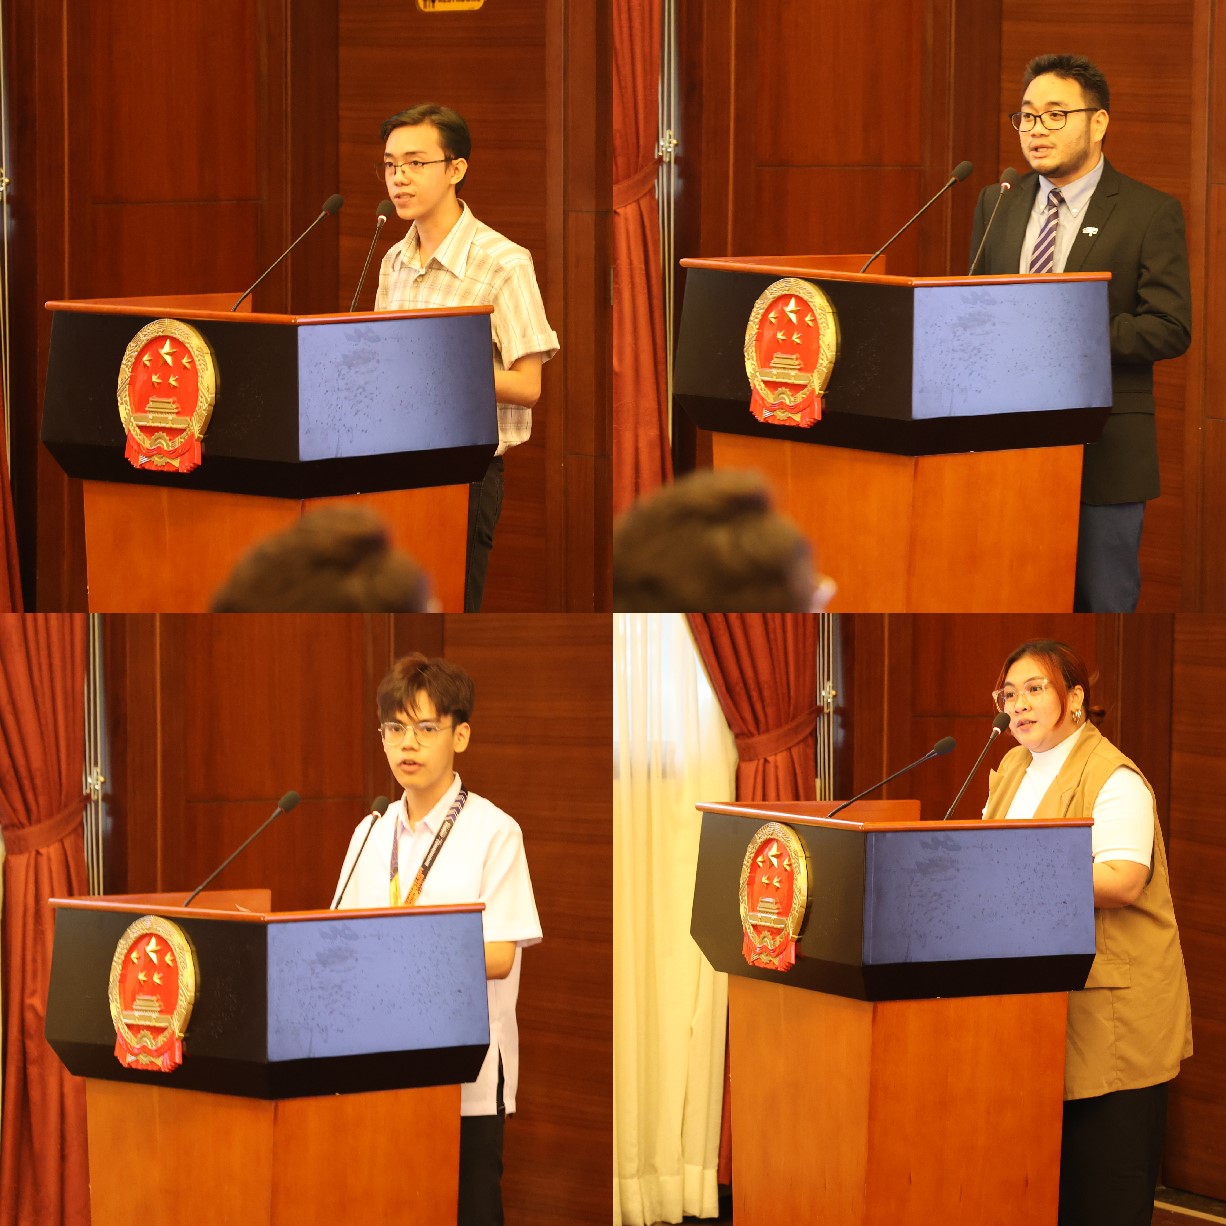 菲律宾大学、菲律宾师范大学的4位学生和校友代表现场发言向中方表示感谢并分享体会。驻菲律宾使馆 供图